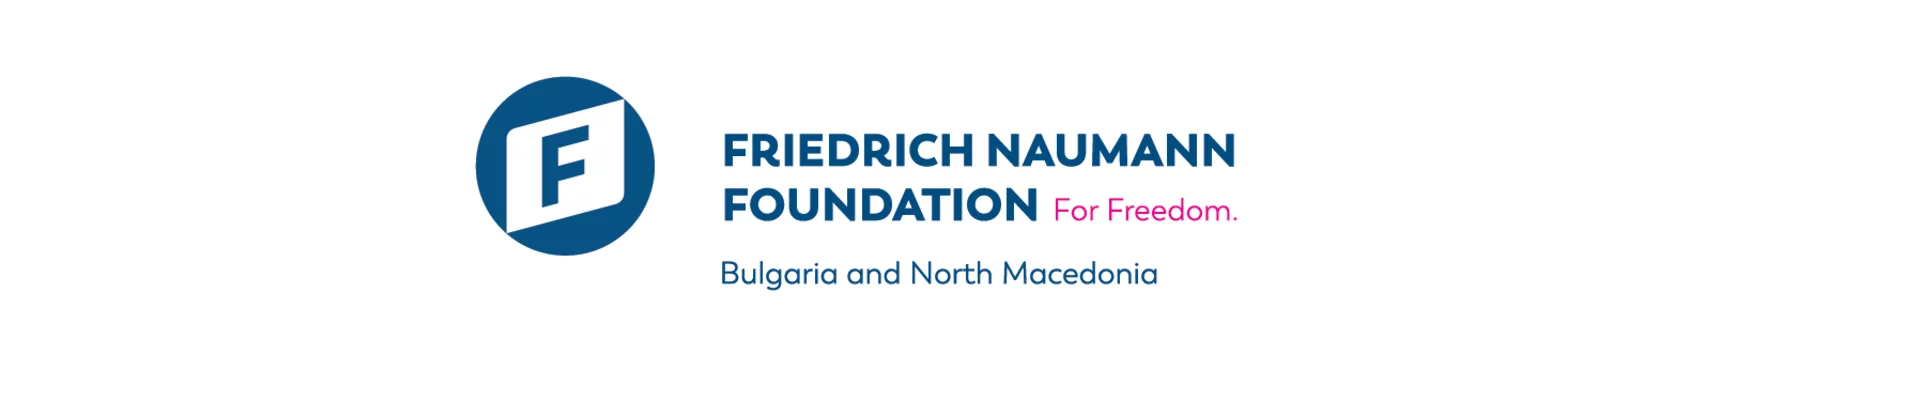 Friedrich Naumann Foundation for Freedom Logo